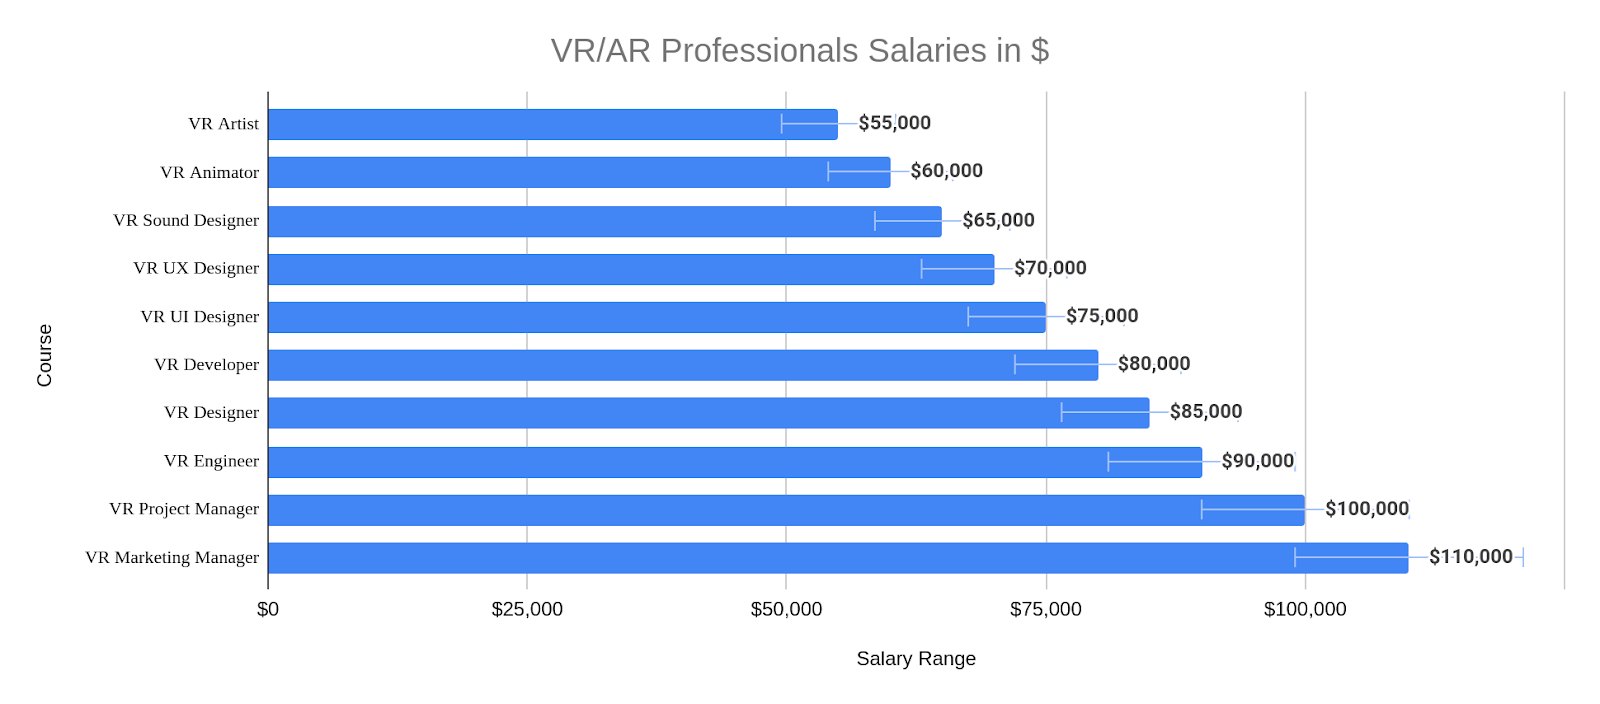 VR/AR Professionals Salaries in $